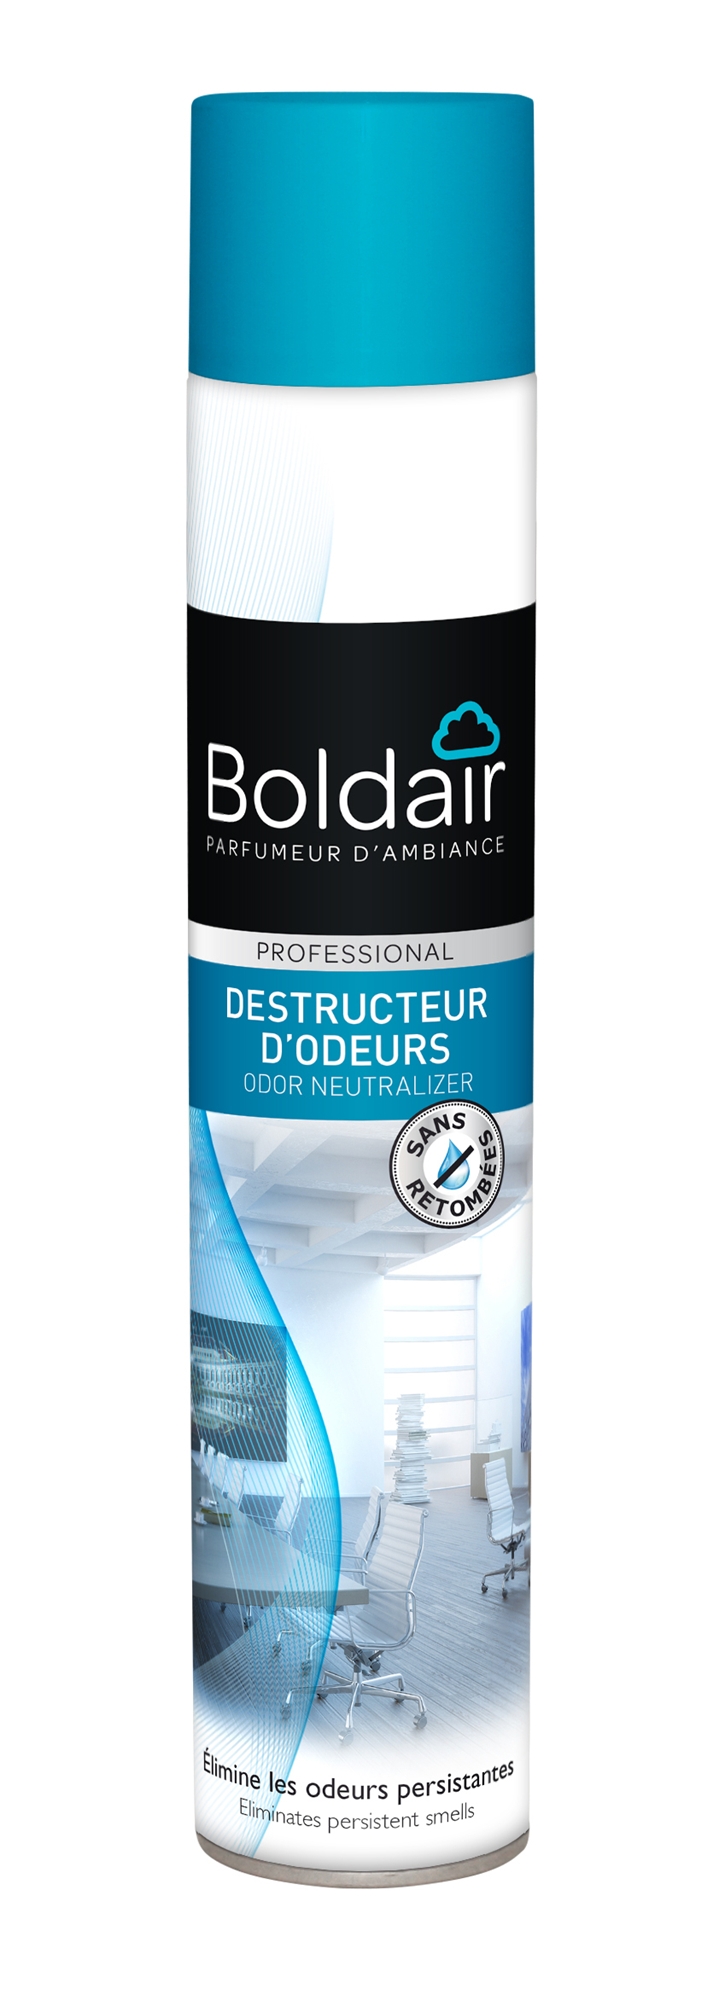 Destructeur d'odeur – Le French Cleaning